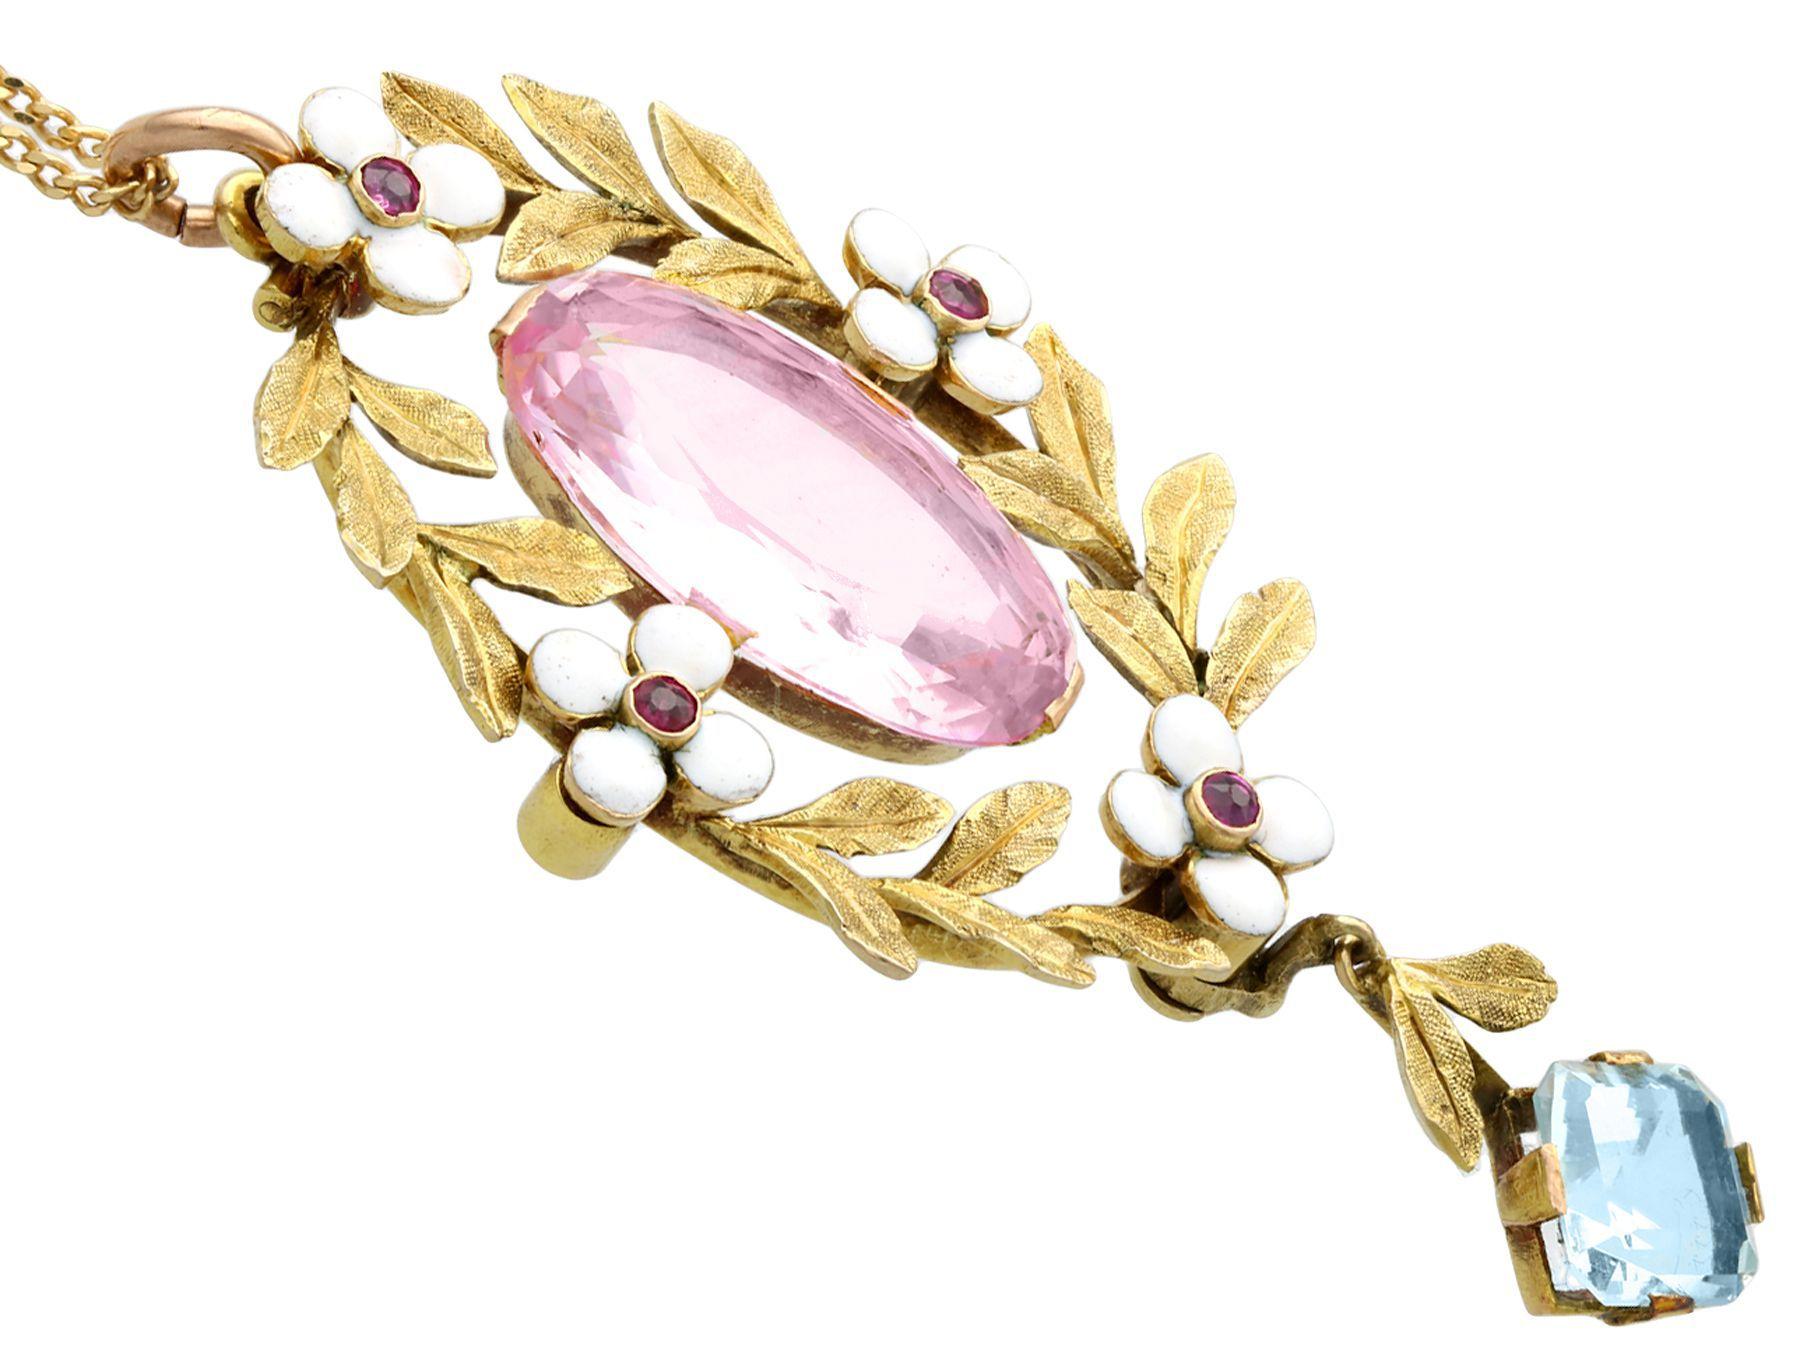 rose gold aquamarine pendant